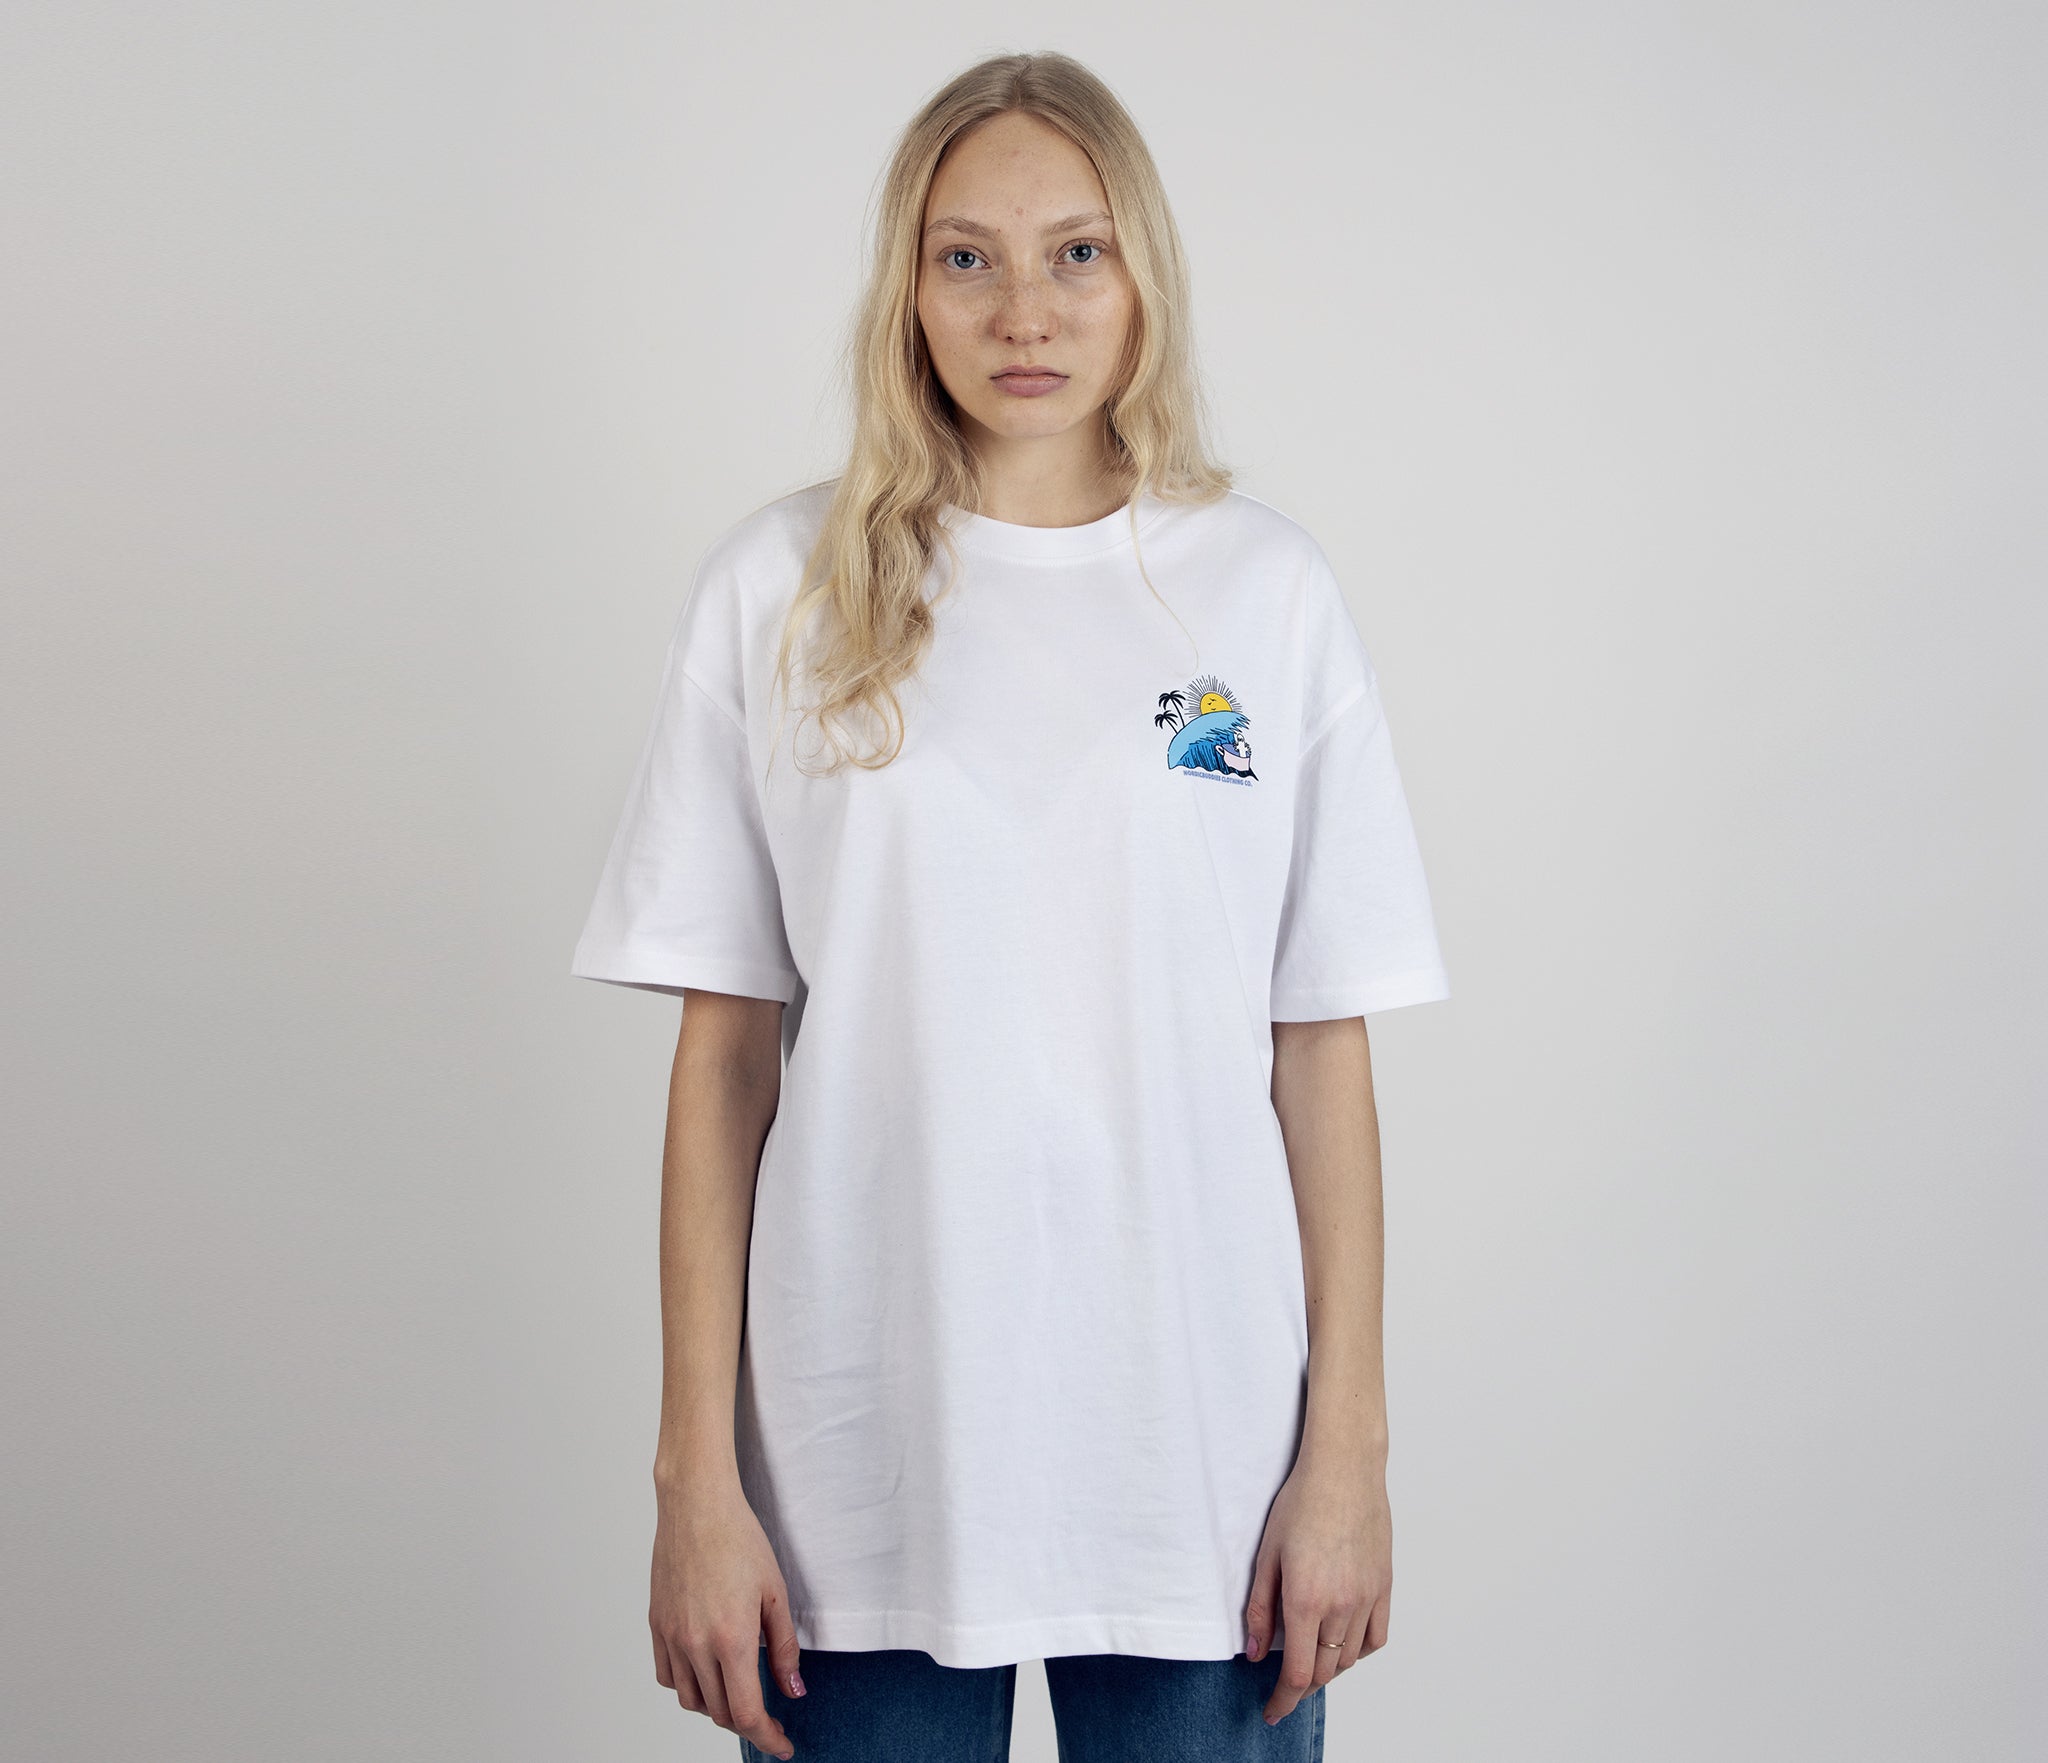 Hattifatteners Surf Trip T-Shirt Unisex - White